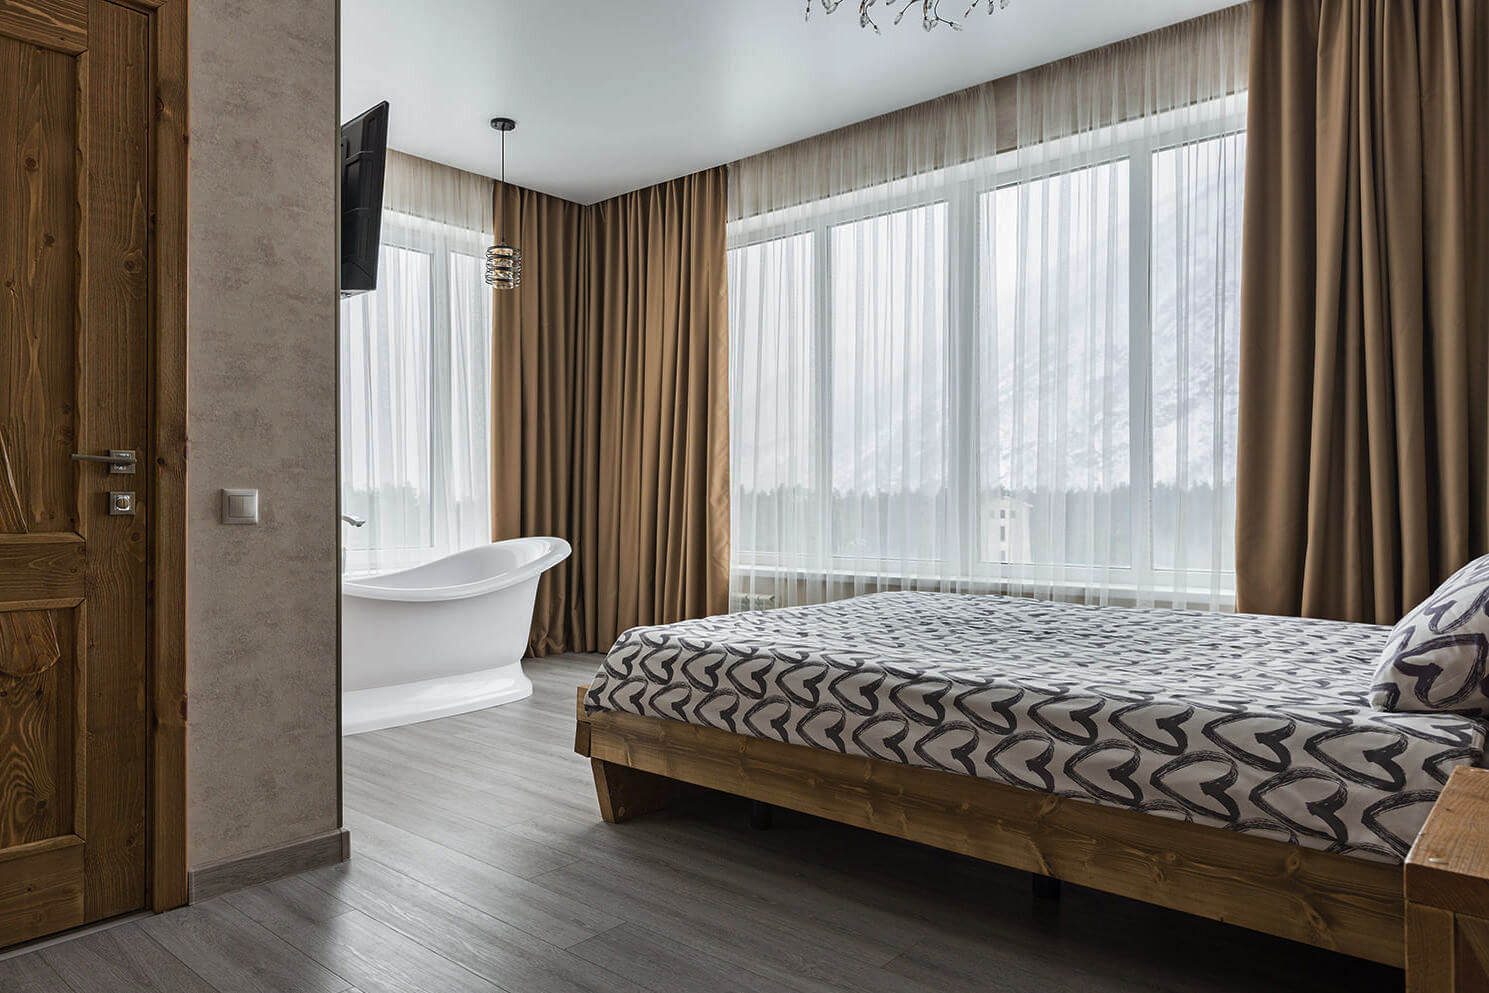 В номере: большая кровать и панорамные окна, открытая ванна у кровати.